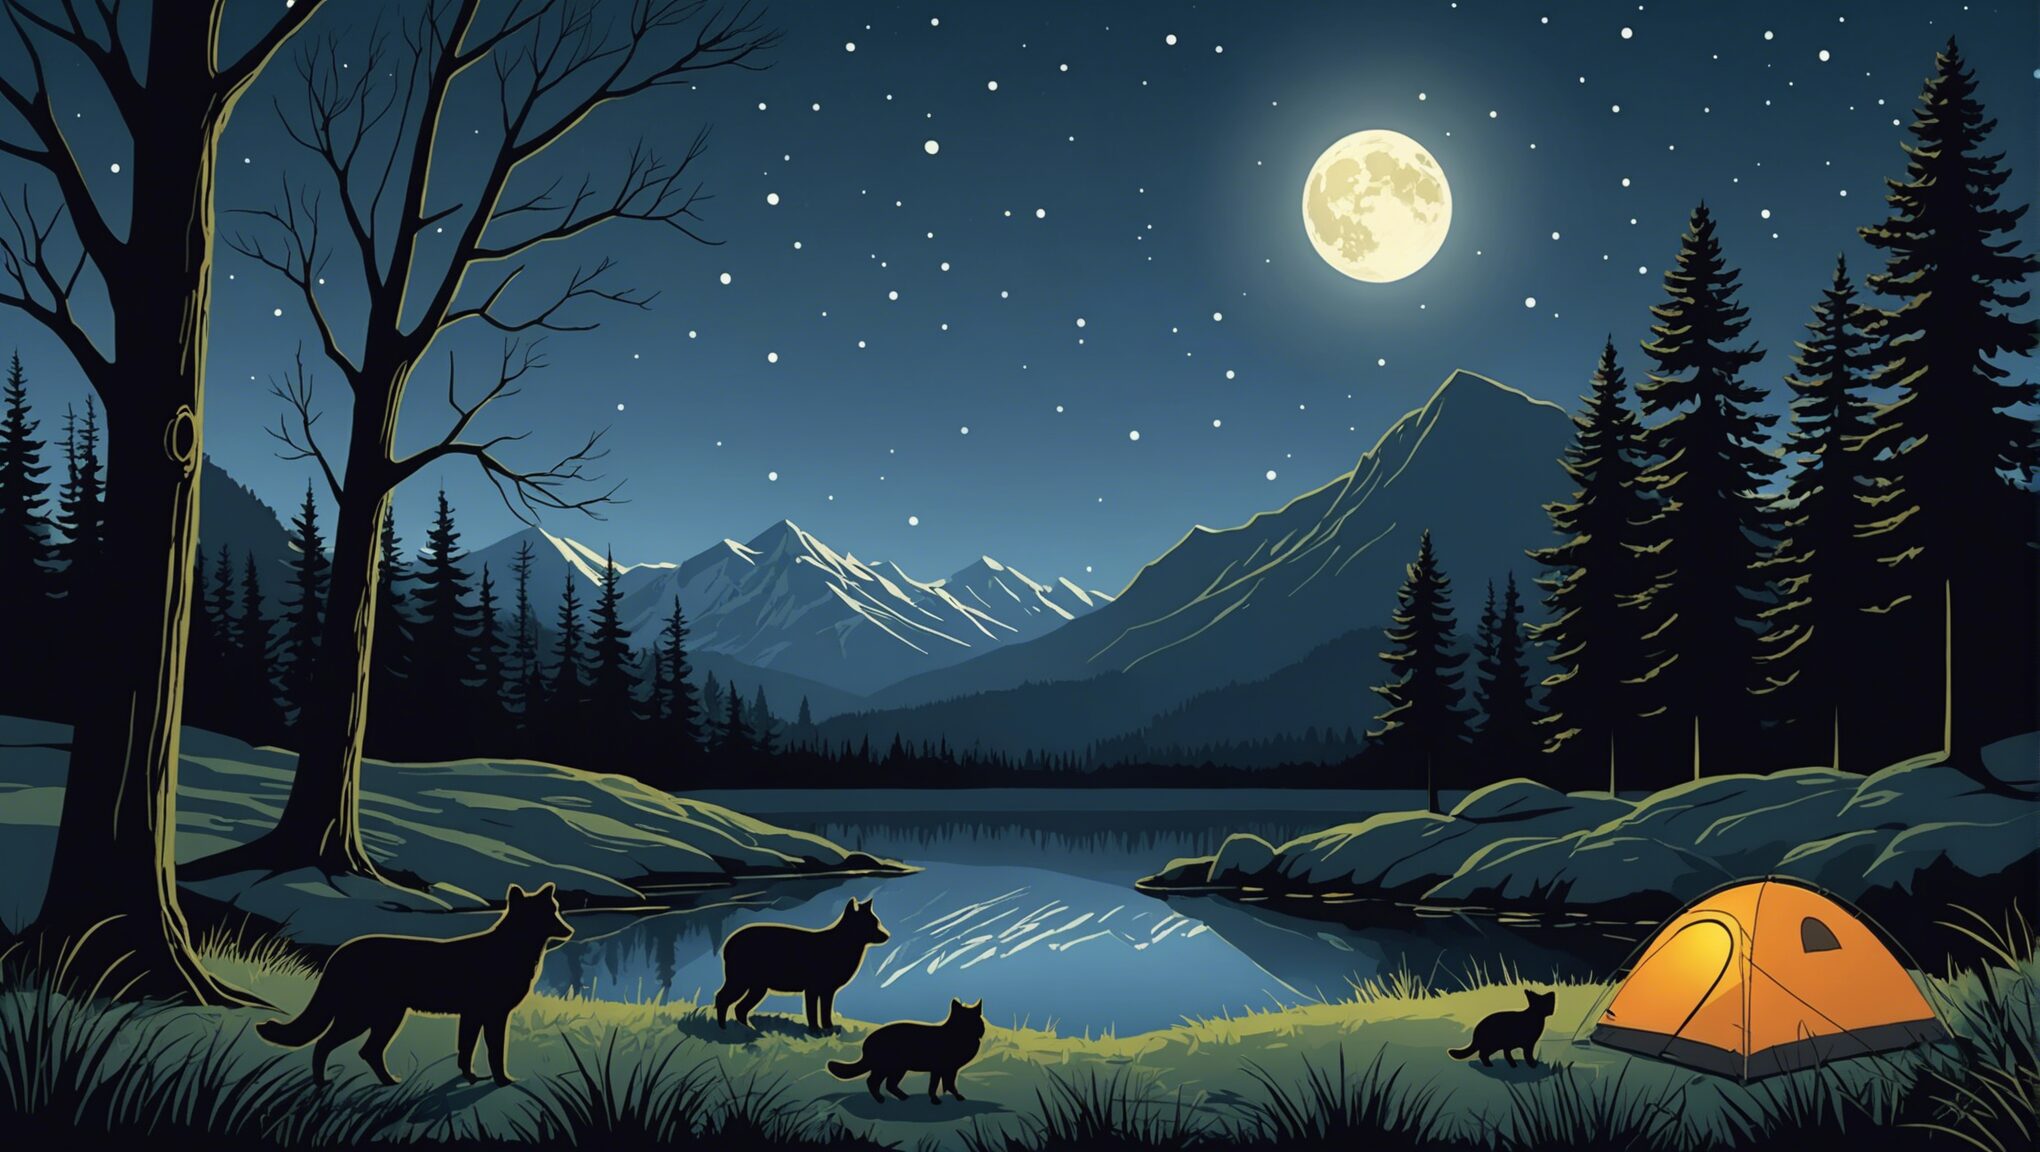 découvrez comment observer les hérissons et d'autres animaux nocturnes lors d'une nuit en pleine nature avec nos précieux conseils.